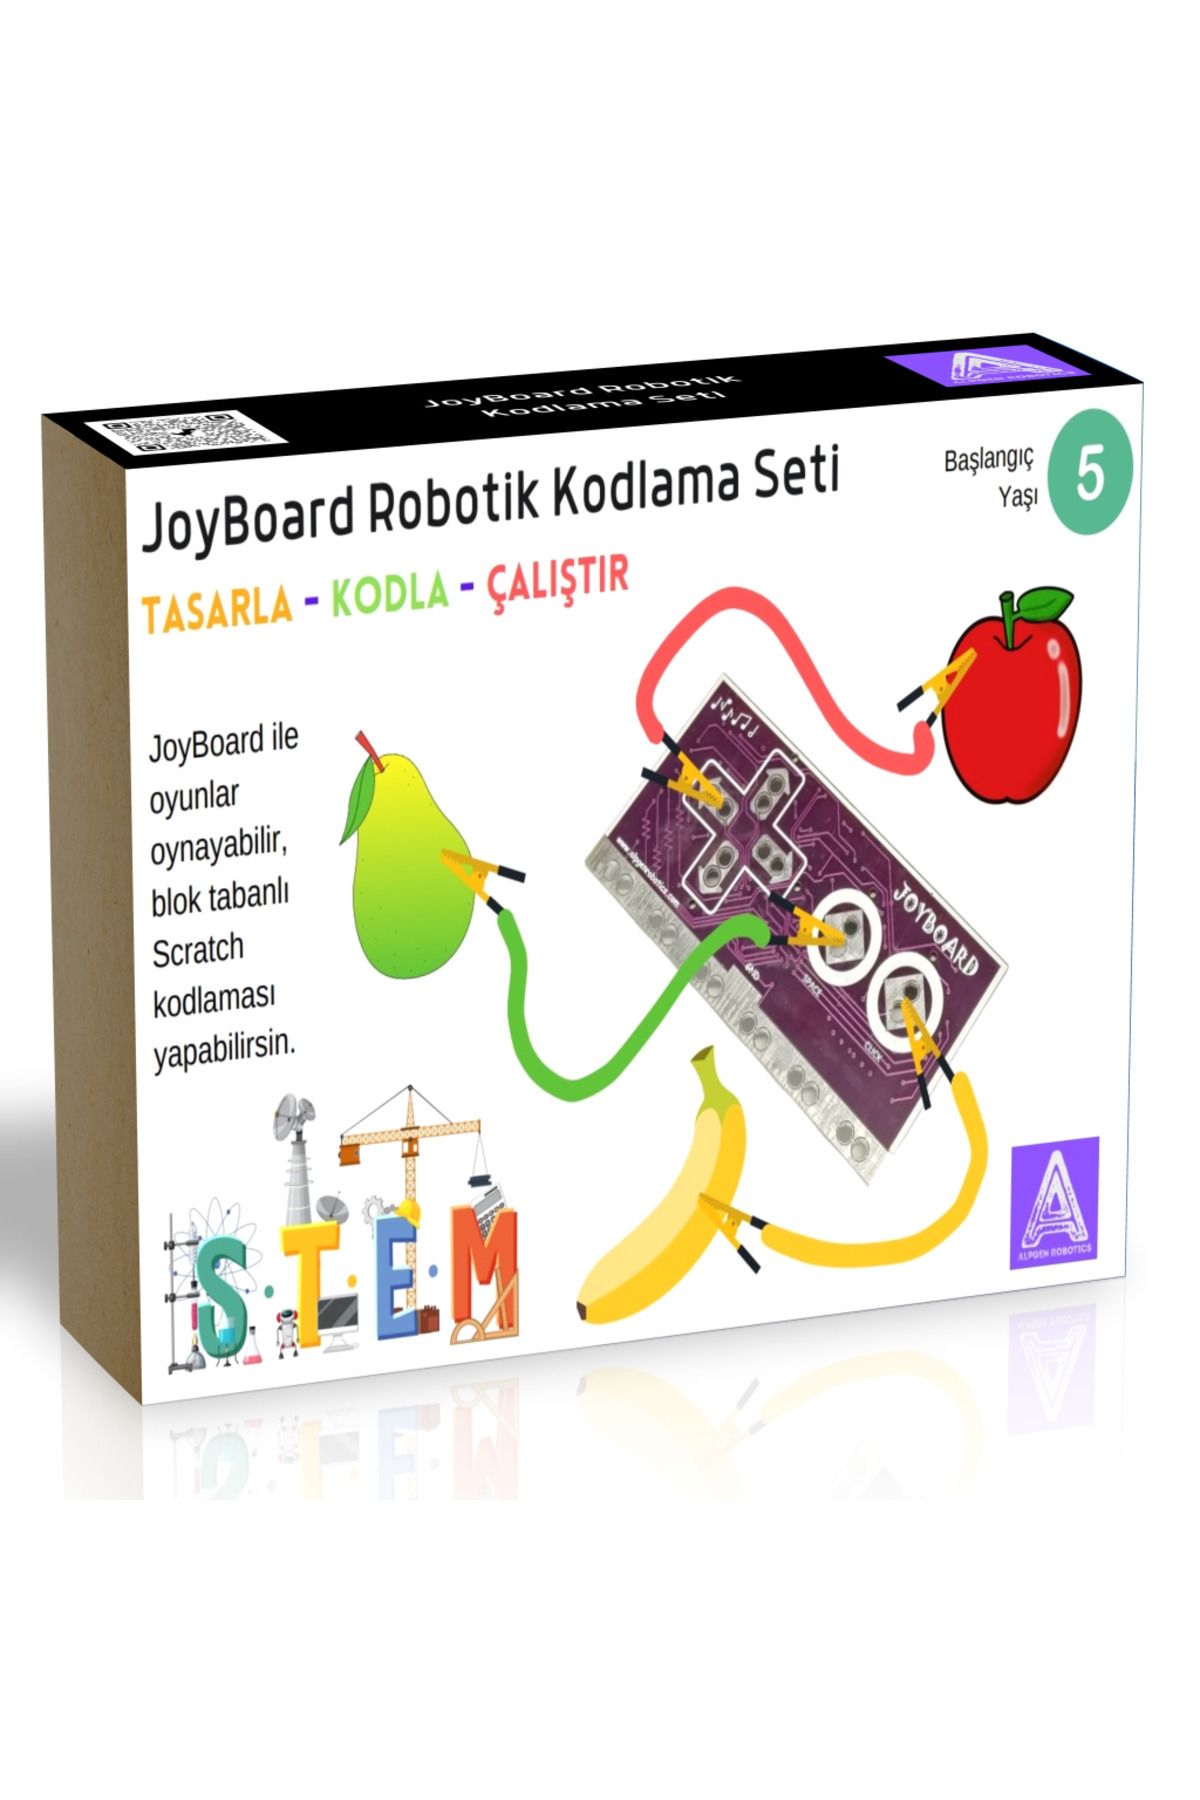 Arduino Joyboard Robotik Kodlama Seti 5 Yaş Ve Üzeri (PROJE KİTAPÇIĞI İLE BİRLİKTE)